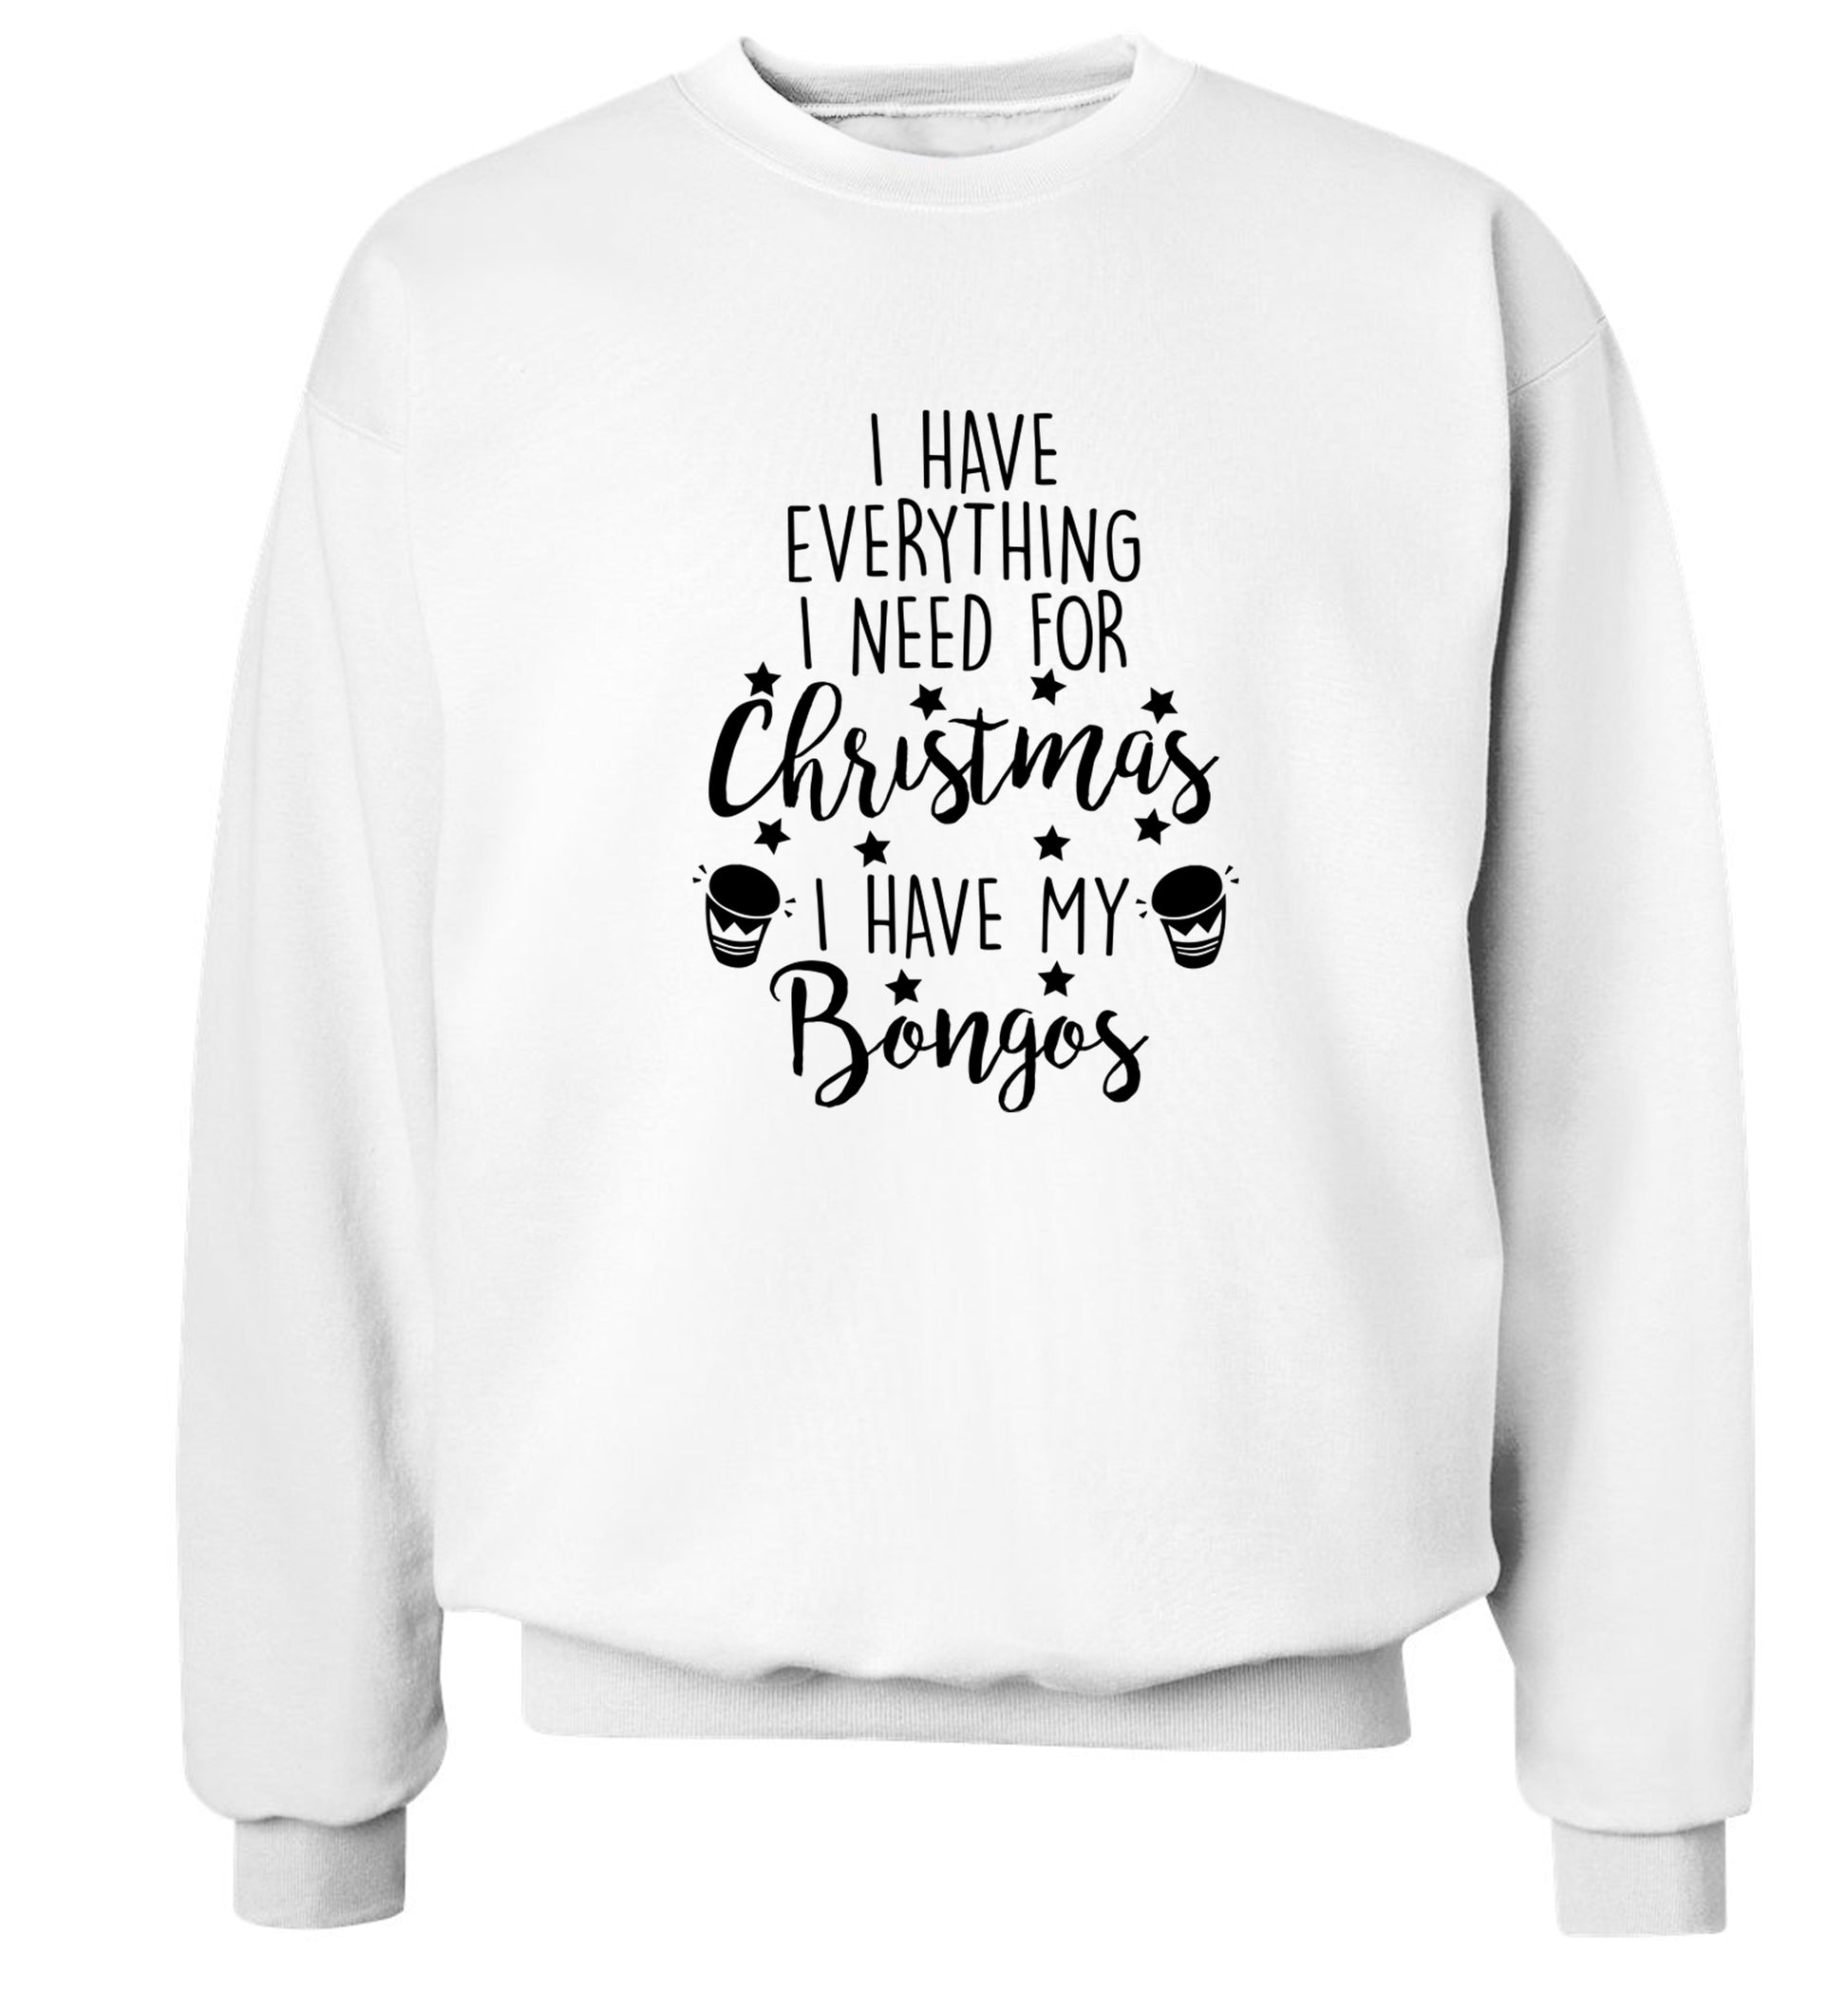 I have everything I need for Christmas I have my bongos! Adult's unisex white Sweater 2XL